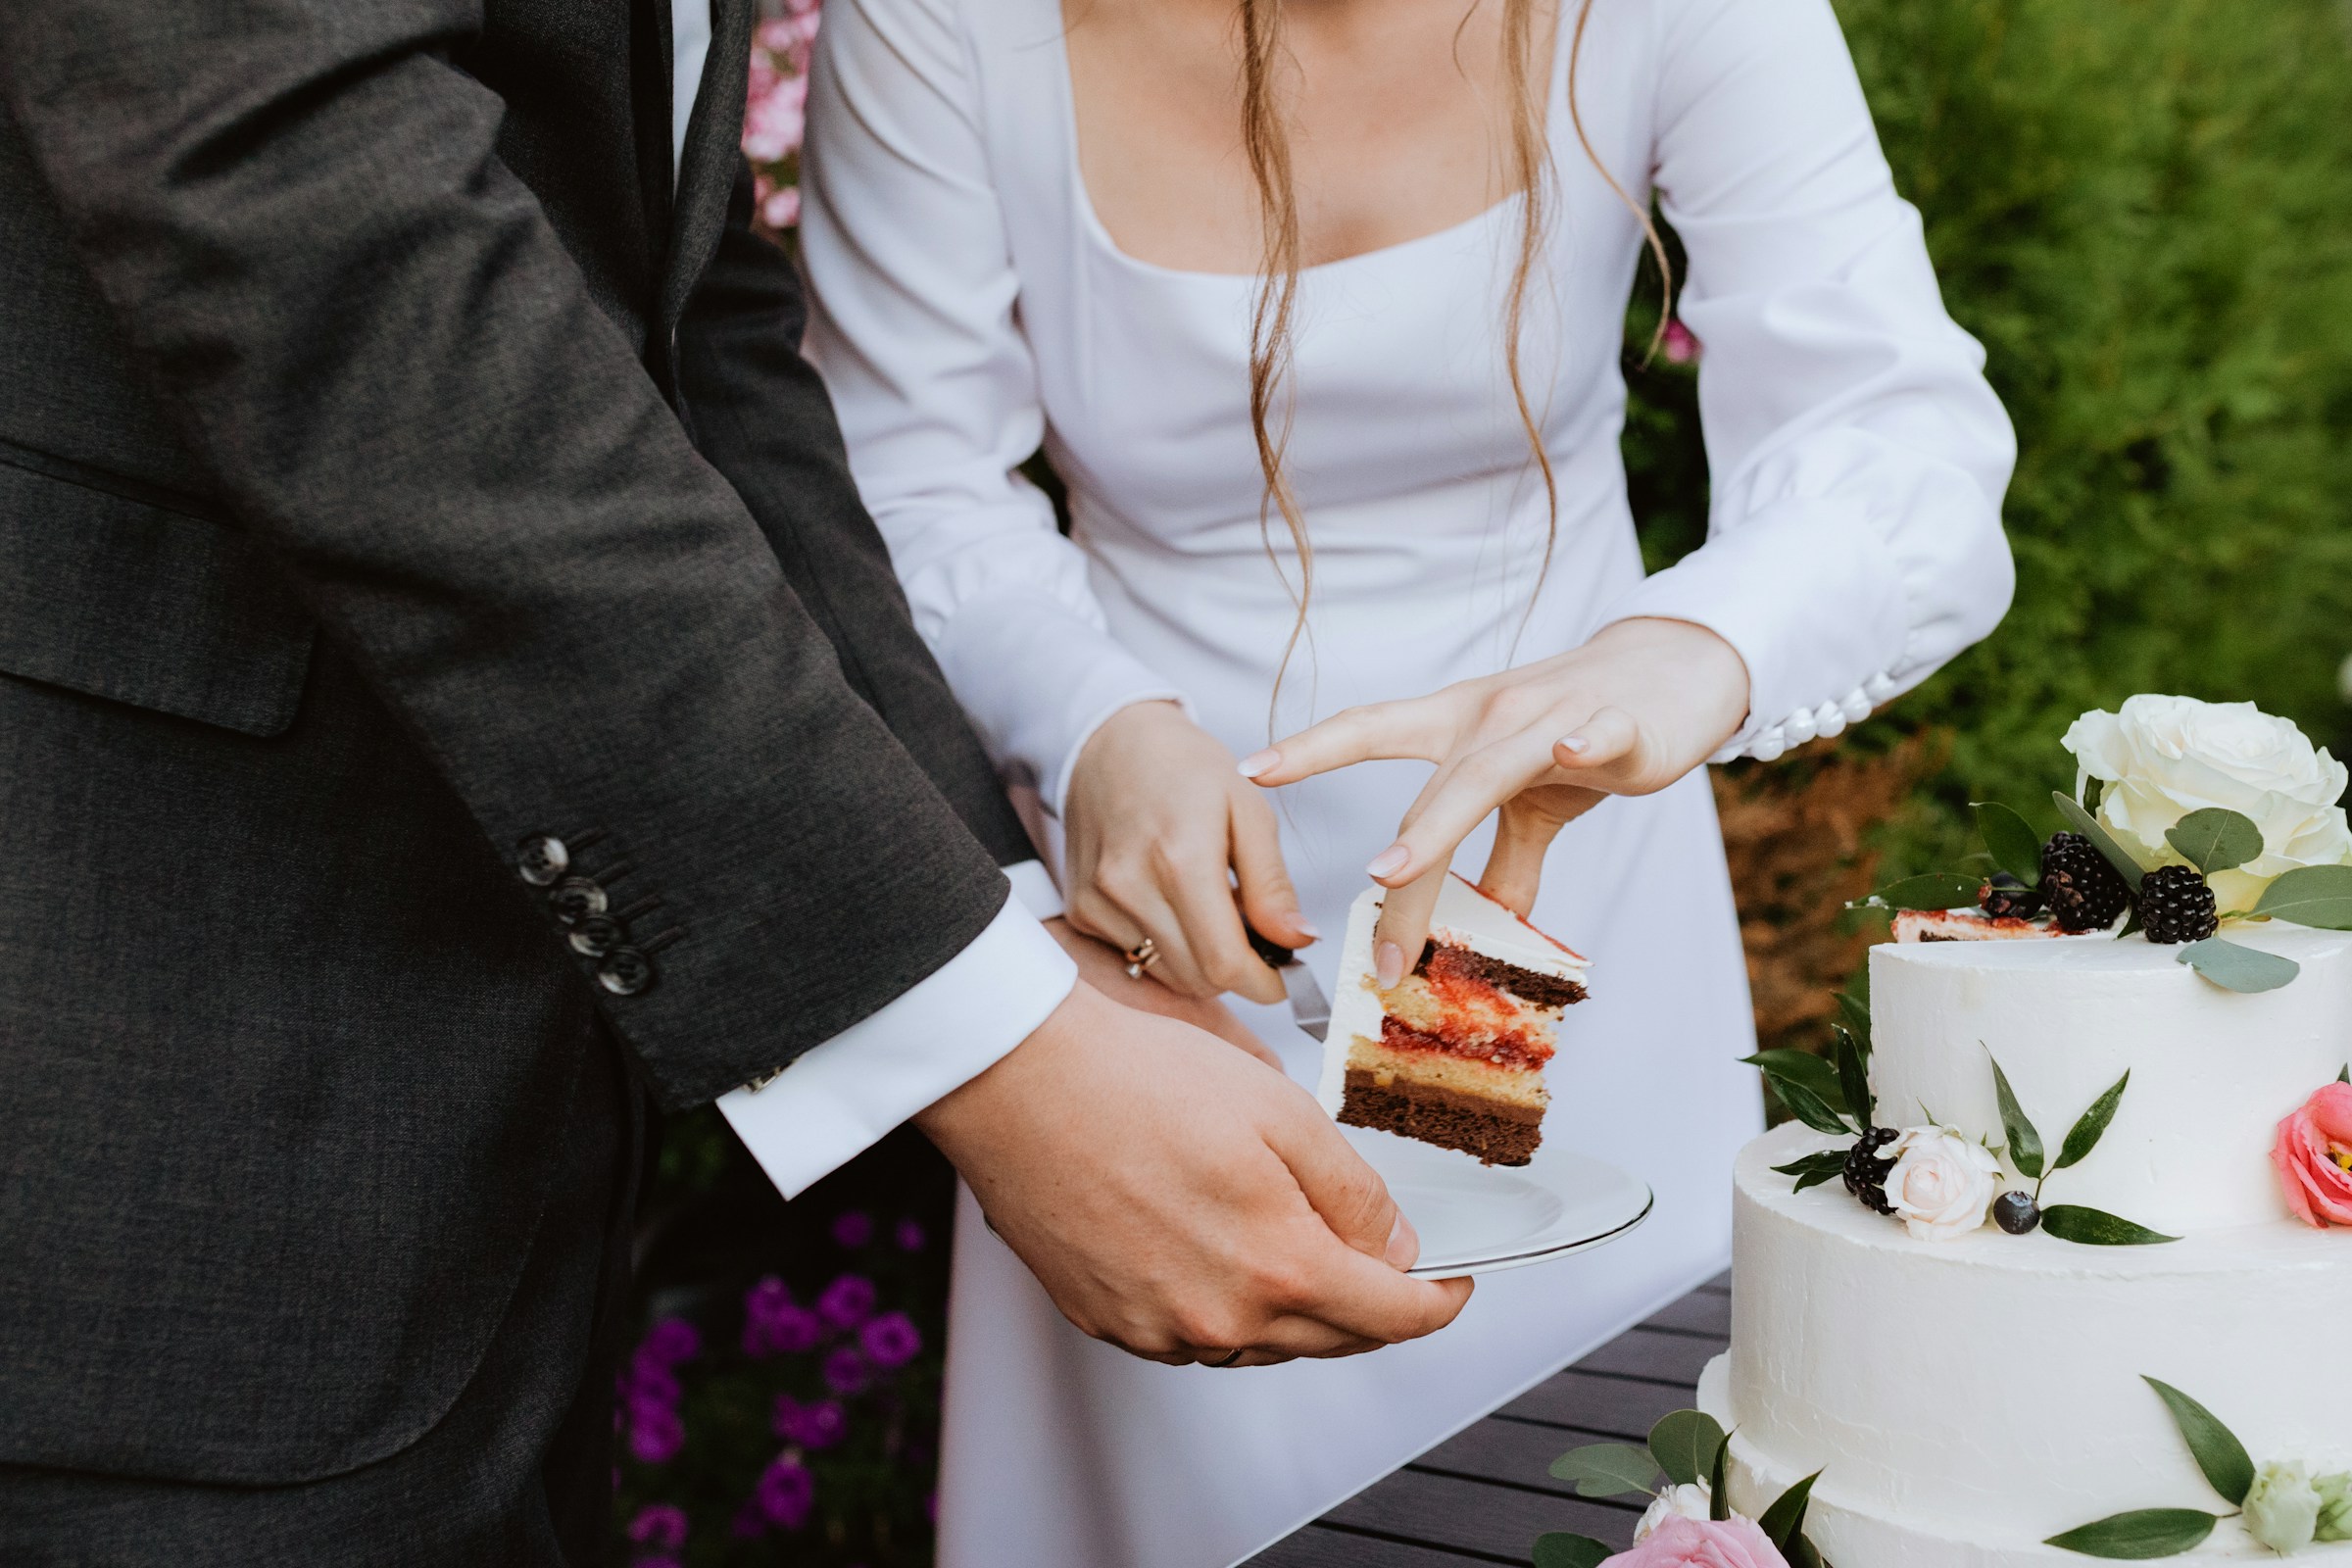 Un couple découpe son gâteau de mariage | Source : Unsplash